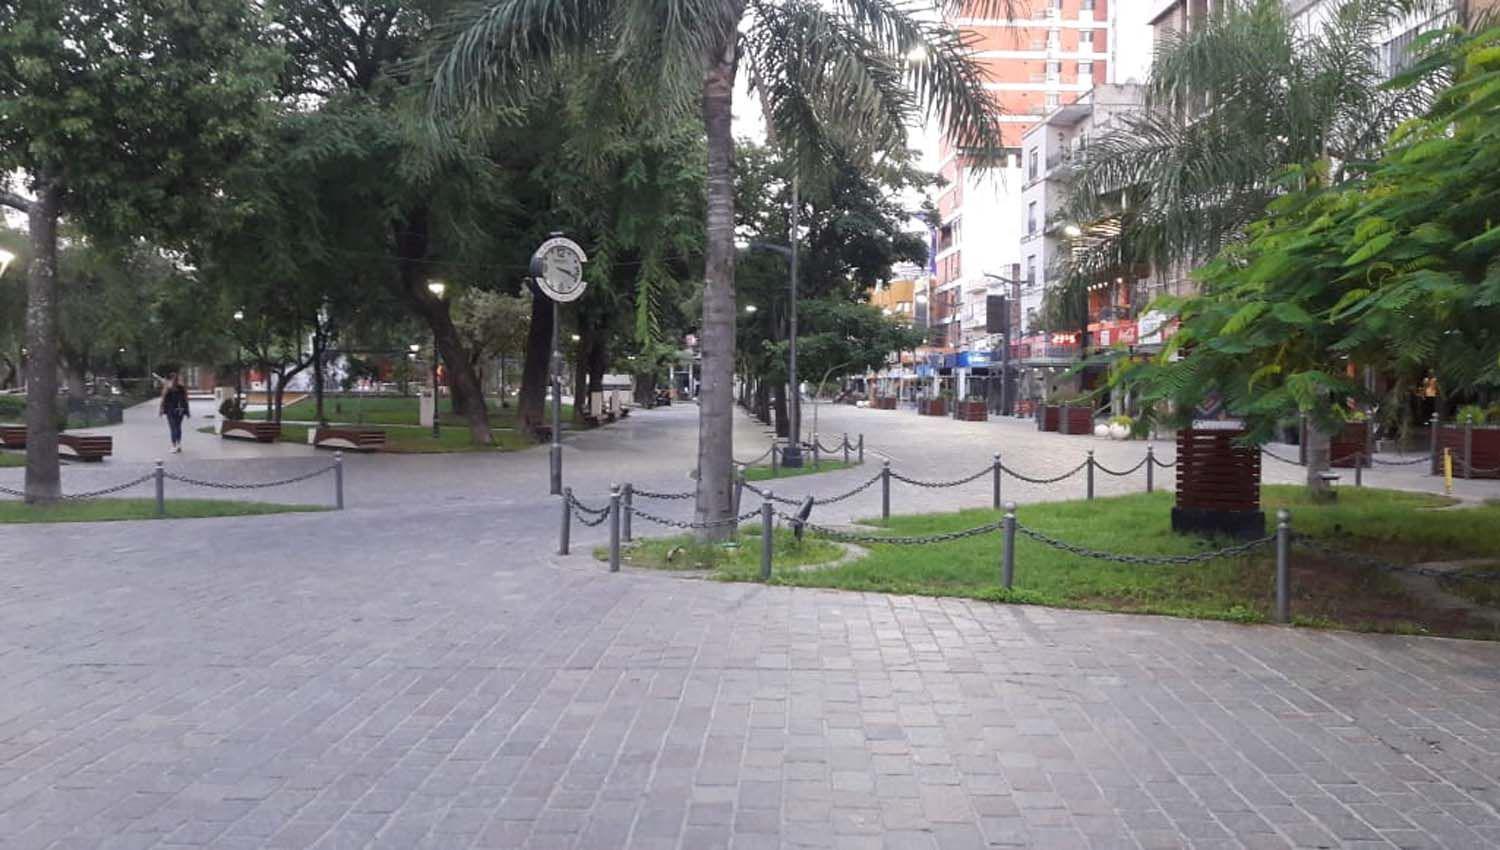 La plaza Libertad amaneció totalmente vacía luego del anuncio del presidente Fern�ndez